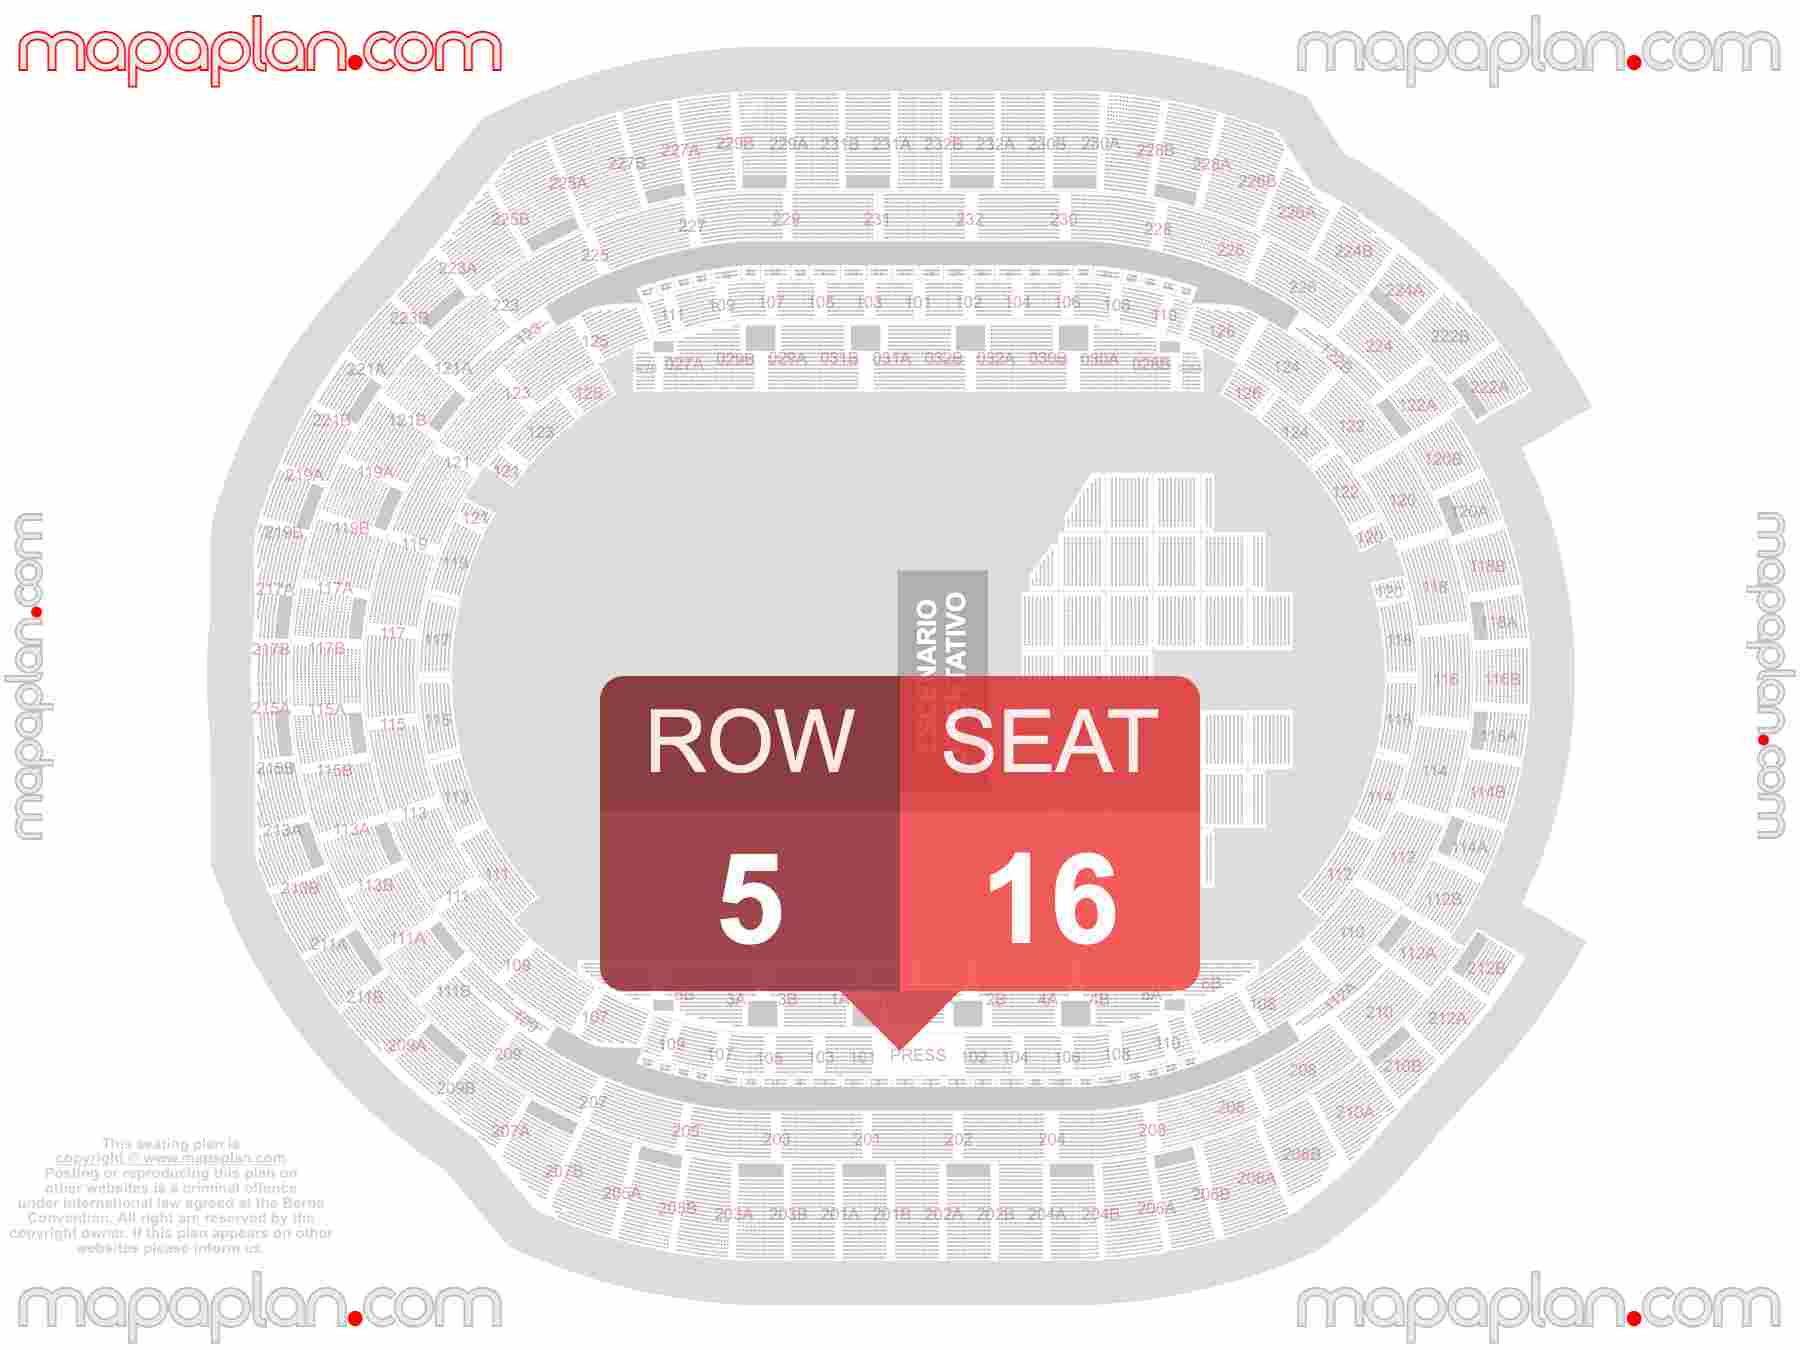 Sevilla Estadio La Cartuja Stadium seating map Concerts (Conciertos mapa plano de asientos con numeros de asiento y fila) inside capacity view arrangement plan - Interactive virtual 3d best seats & rows detailed stadium image configuration layout